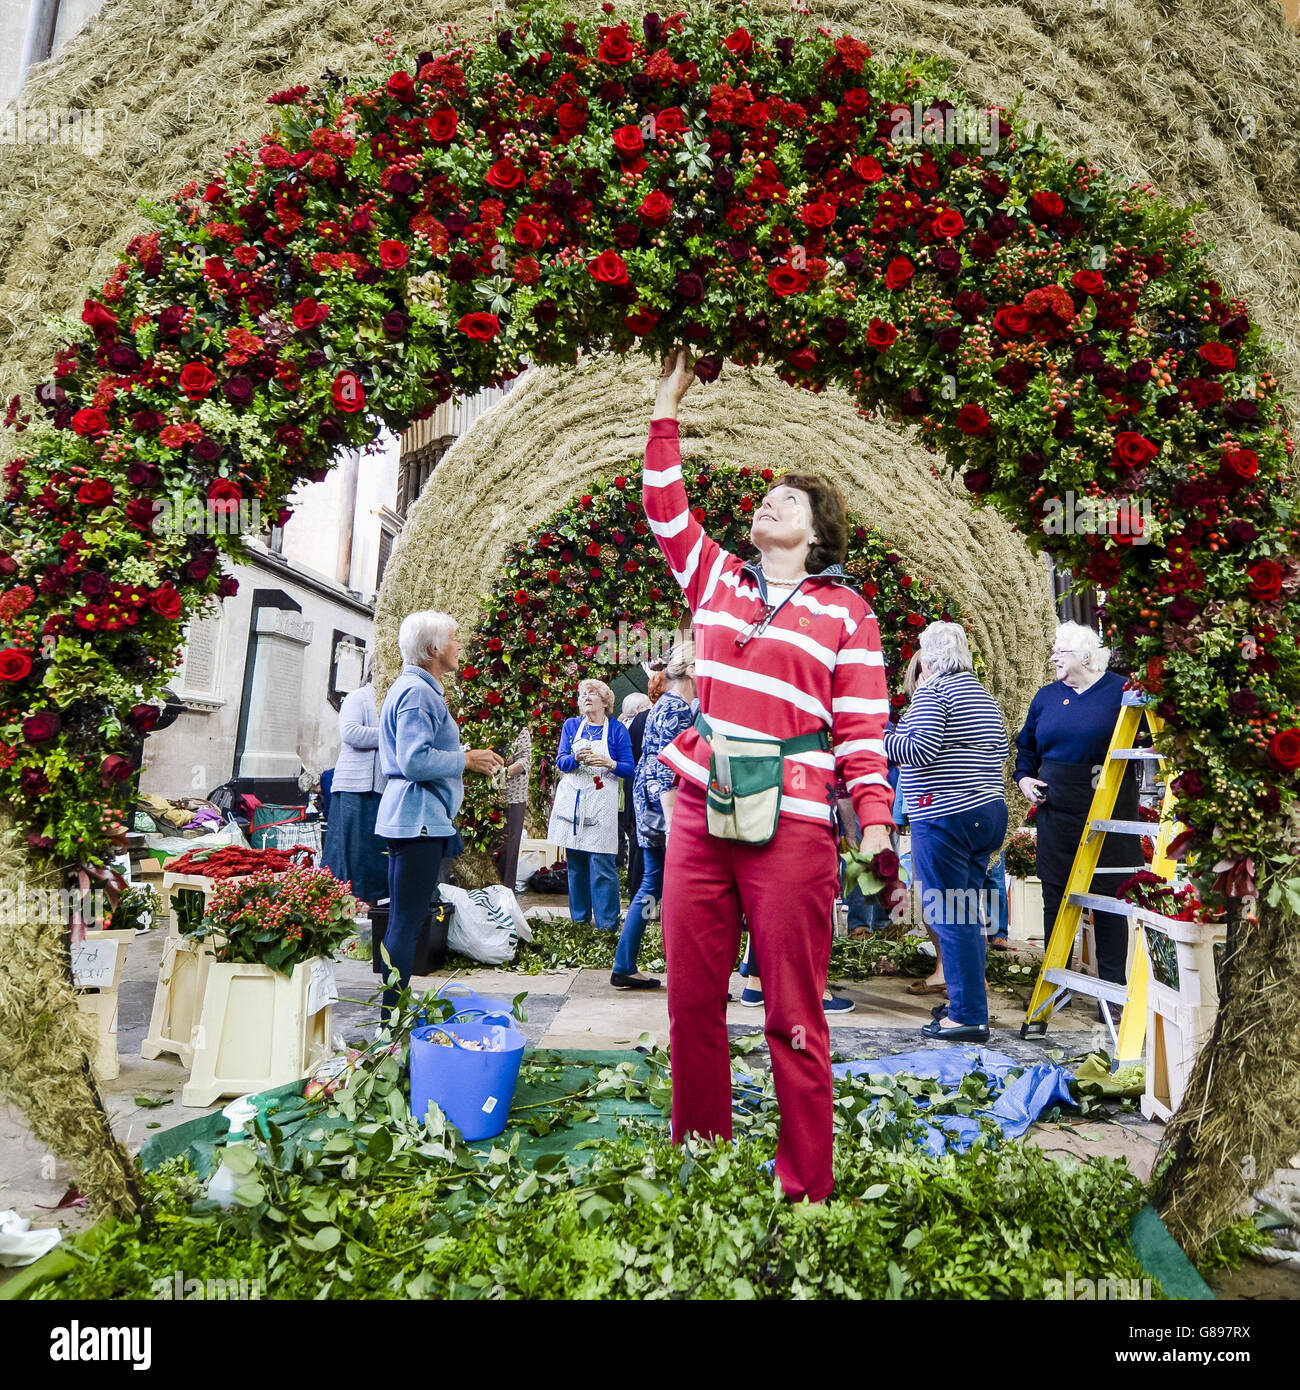 Nicky Green, dal Chalk Valley Flower Club, aggiunge rose rosse e altra flora e fauna a una scultura all'interno della cattedrale di Salisbury nel Magna Flora Flower Festival, che vede 500 arrangiatori di fiori prendere parte alla creazione di una grande mostra ispirata alla Magna carta, con 30,000 fiori. Foto Stock